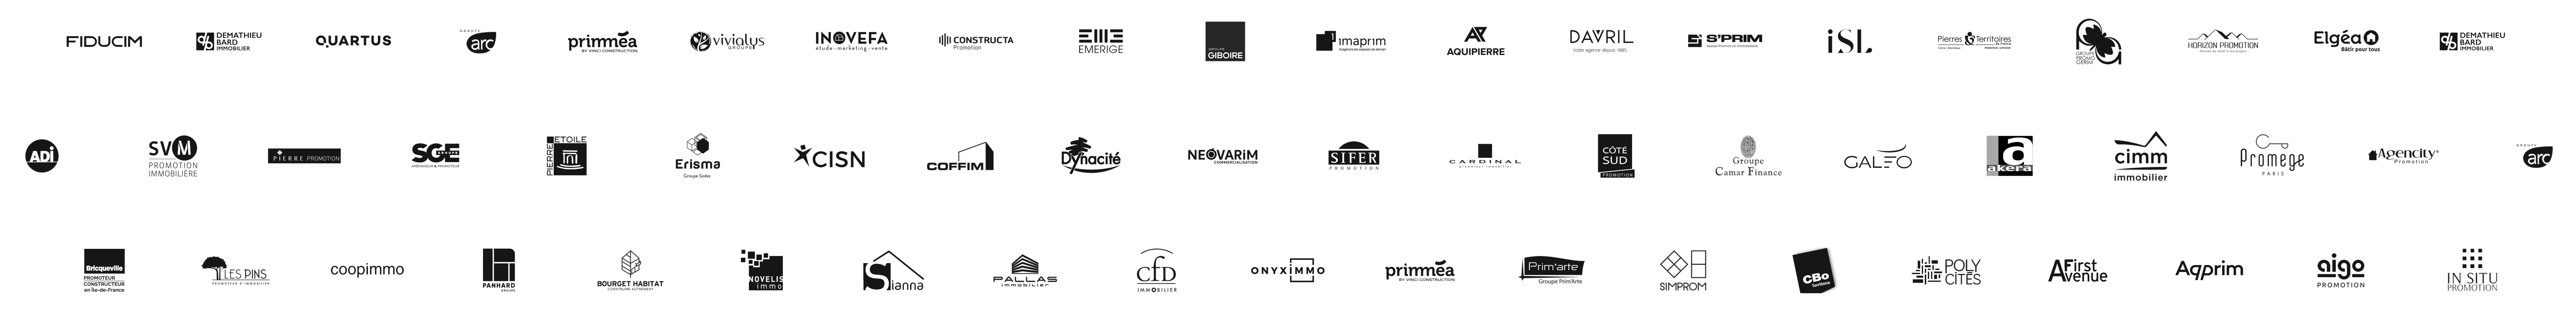 logos promoteurs immobiliers unlatch logiciel